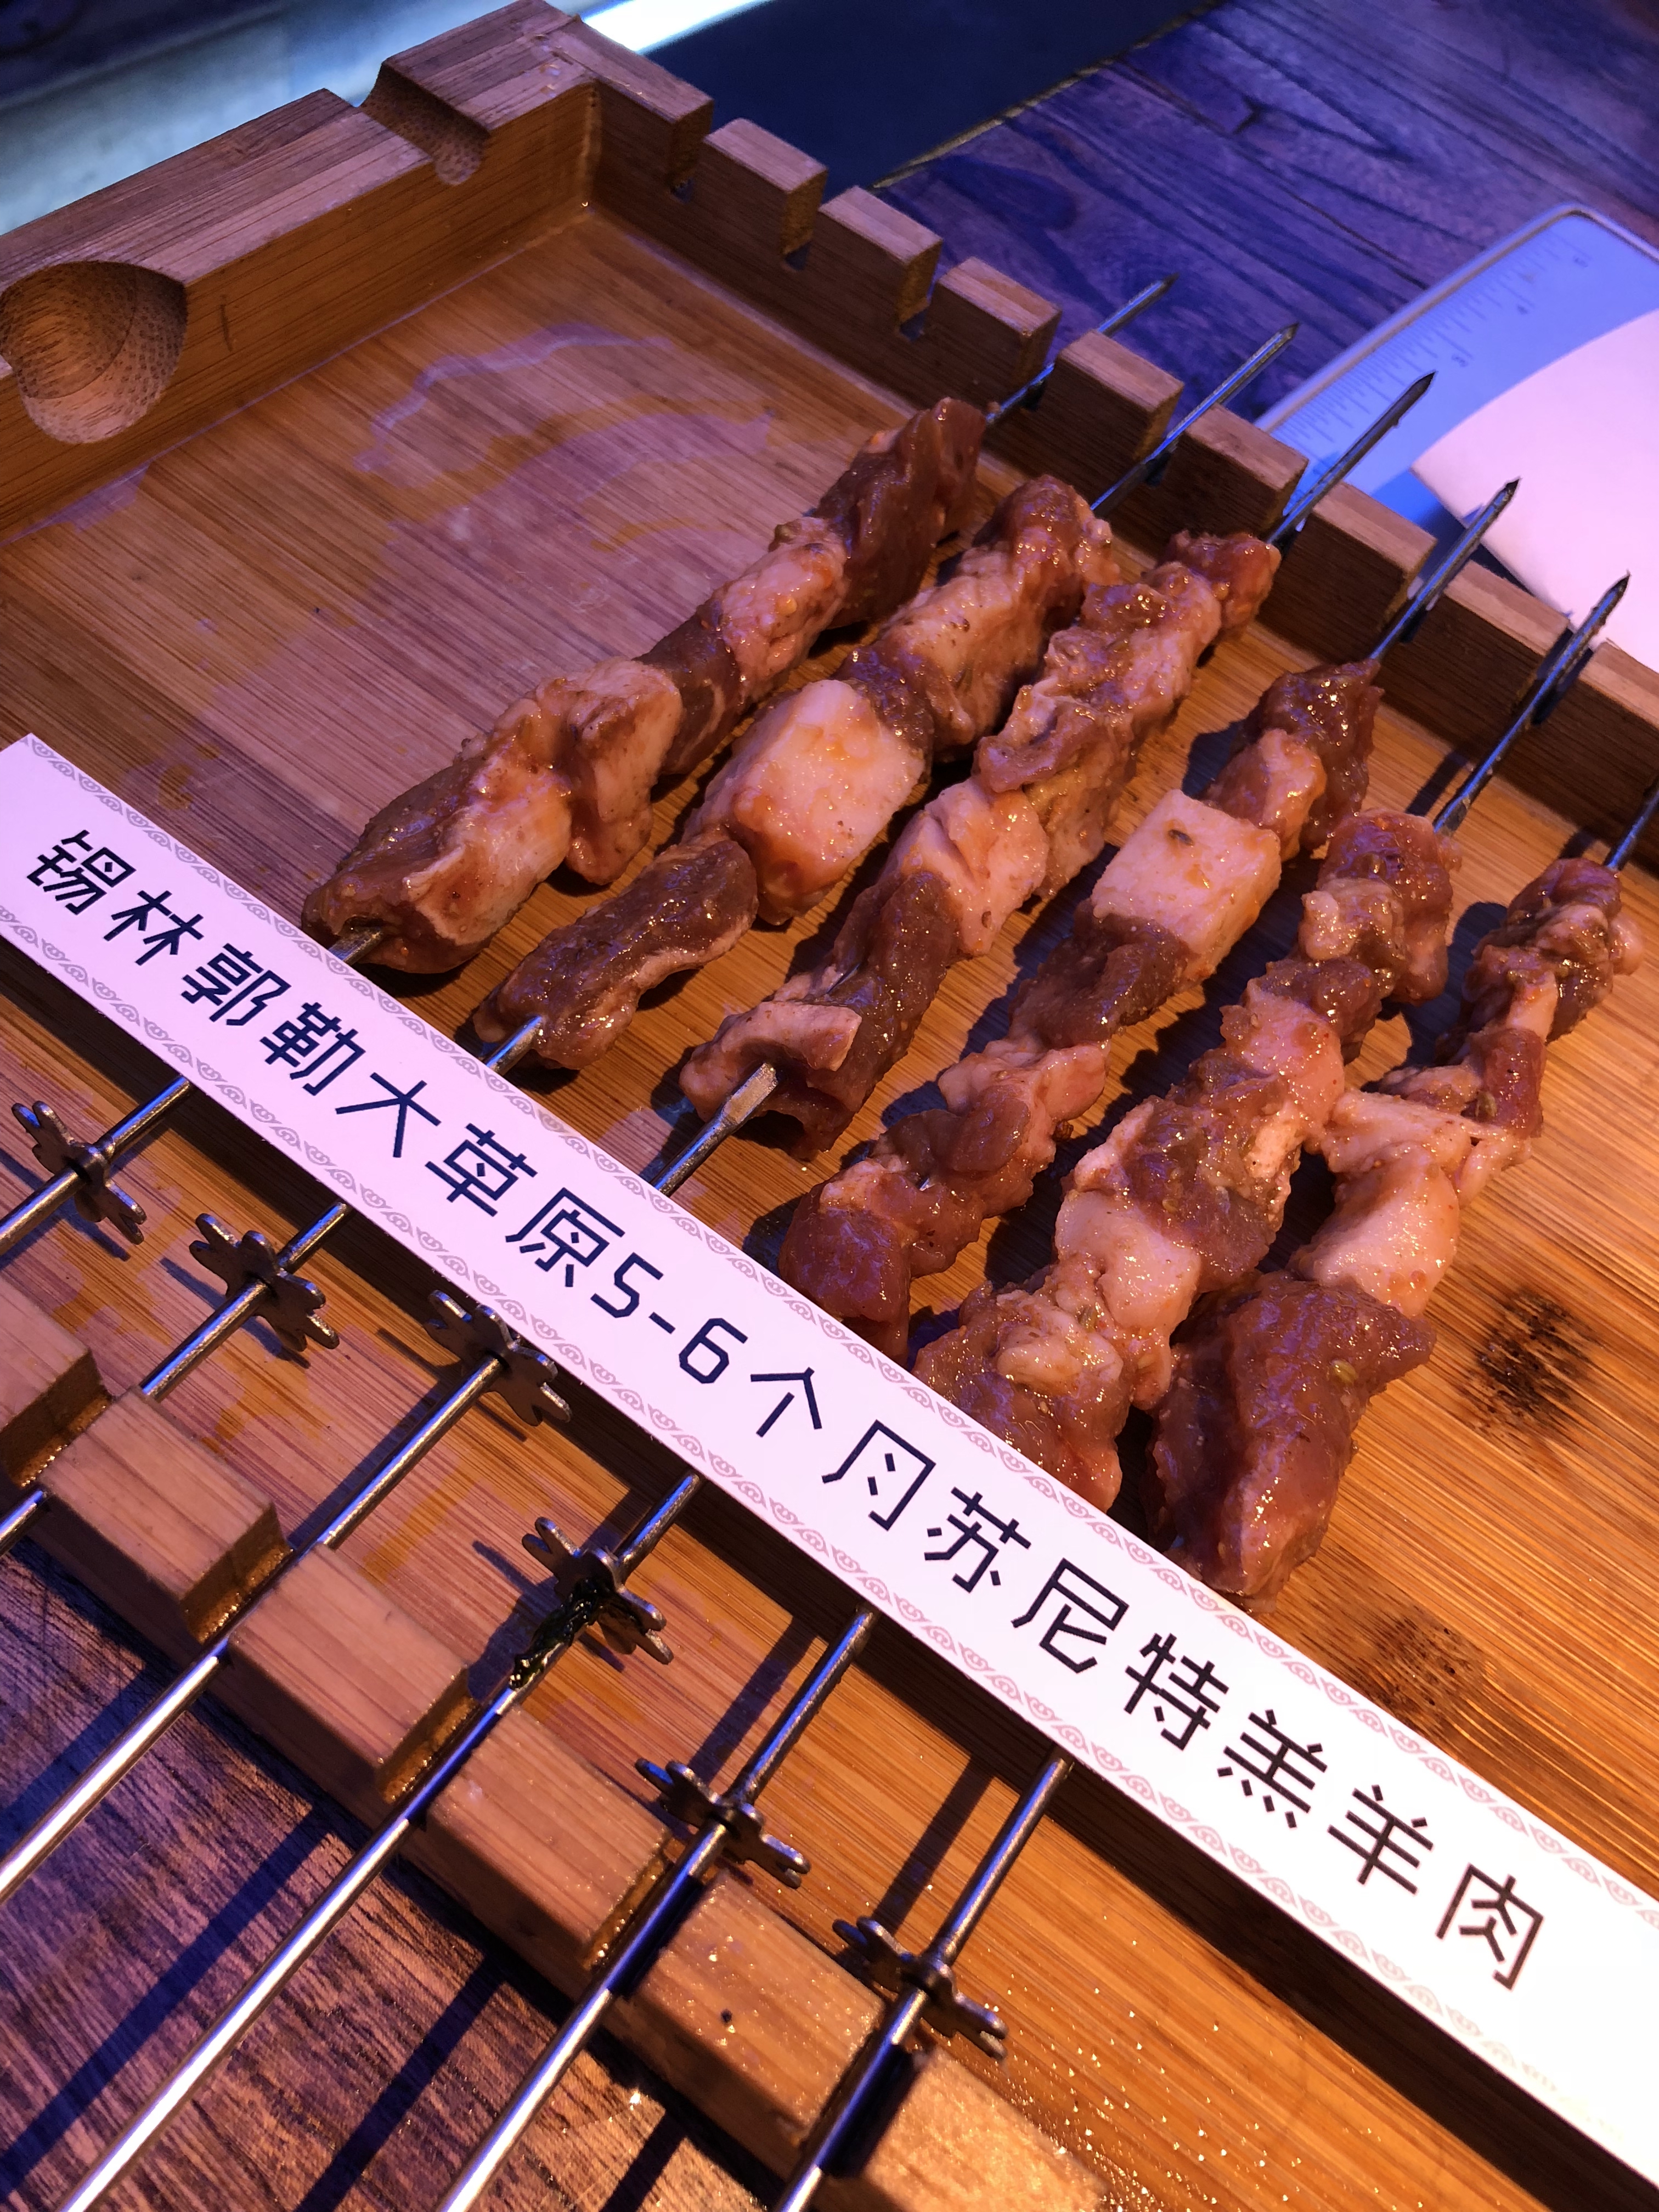 2021三个蒙古大叔烤羊肉串(大宁店)美食餐厅,烤肉的品质不错,特别羊肉